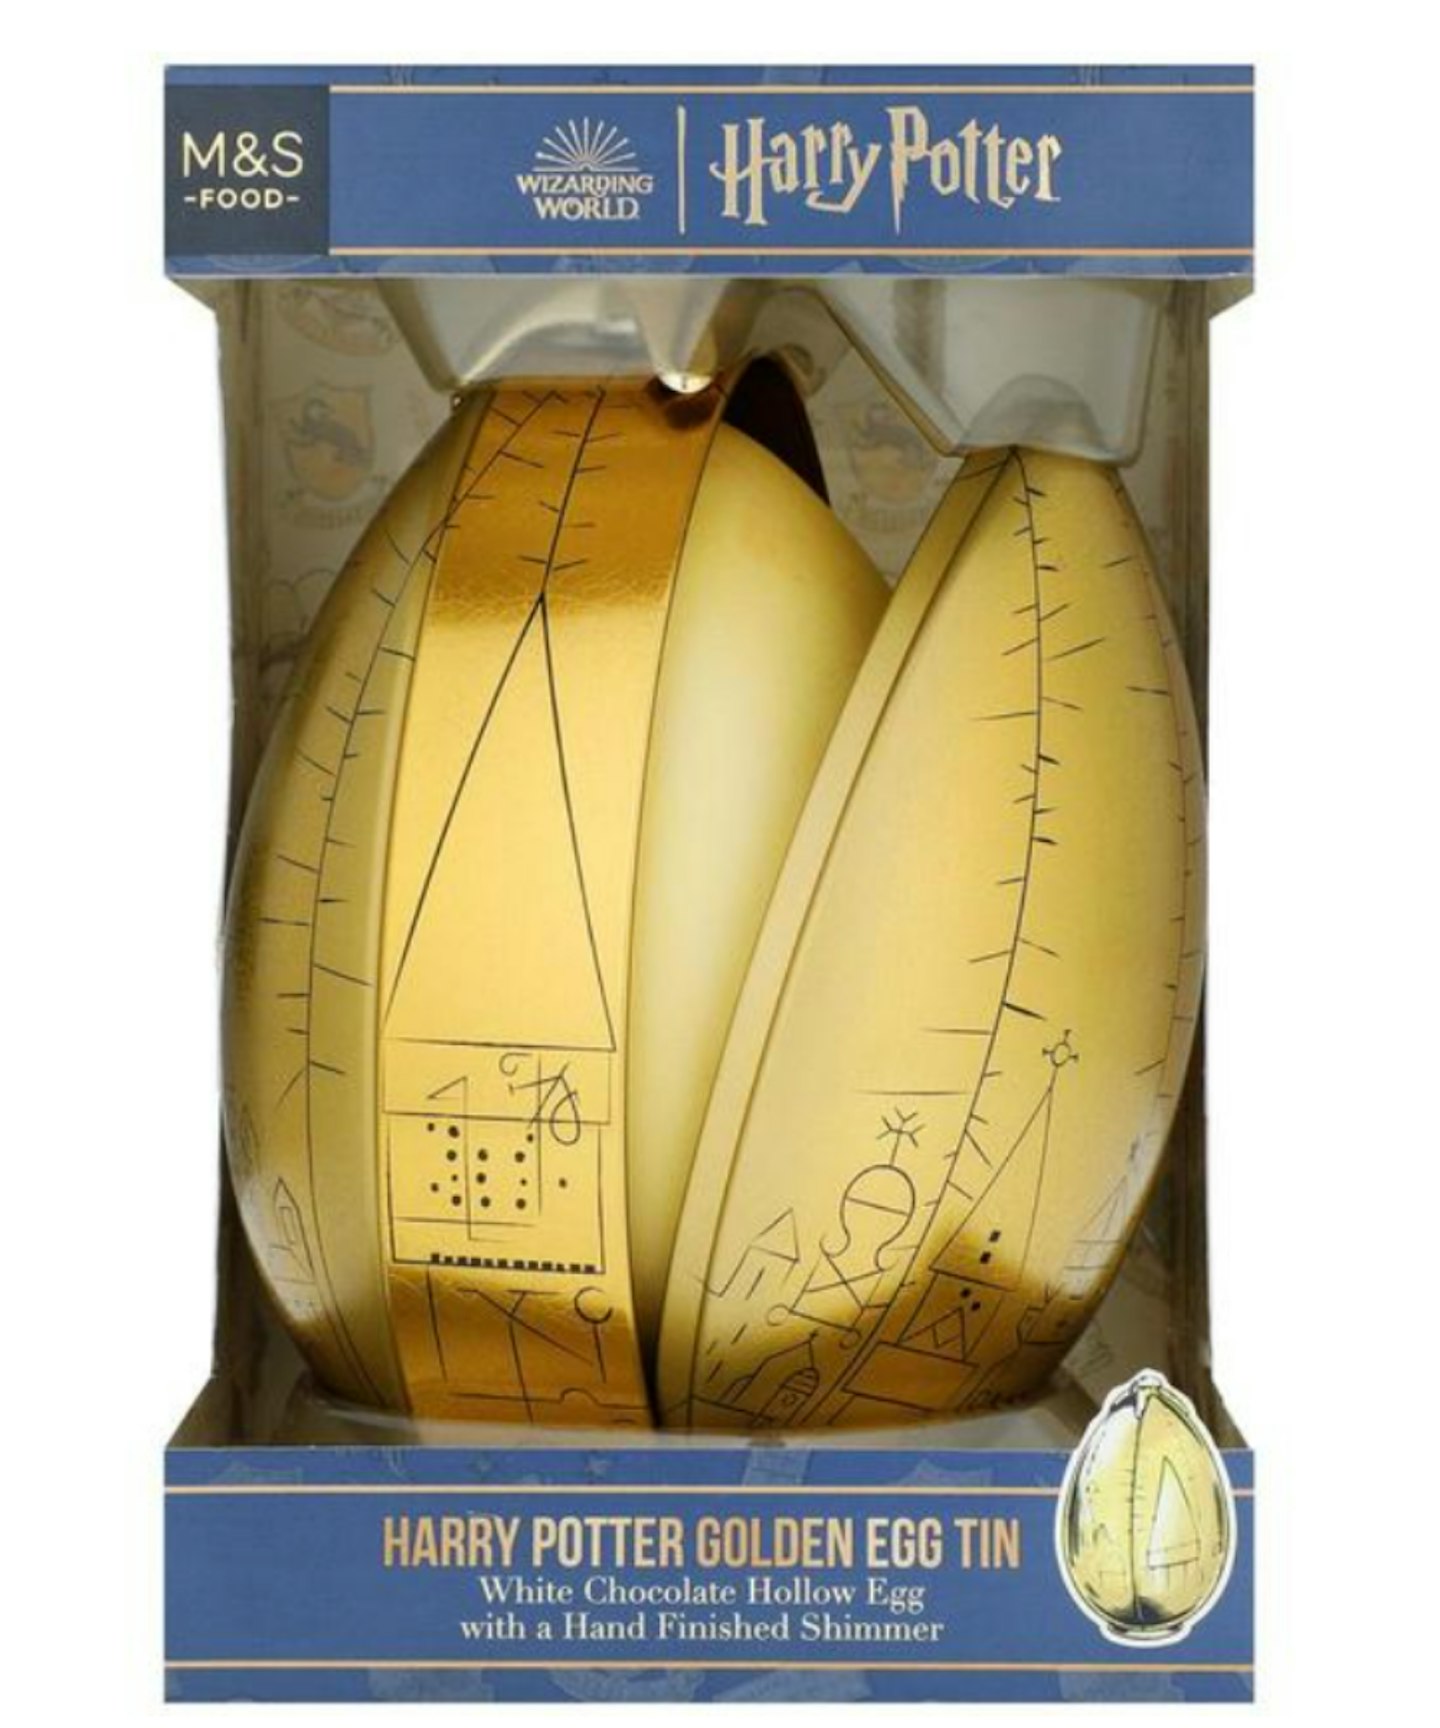 M&S Harry Potter Golden Egg Tin